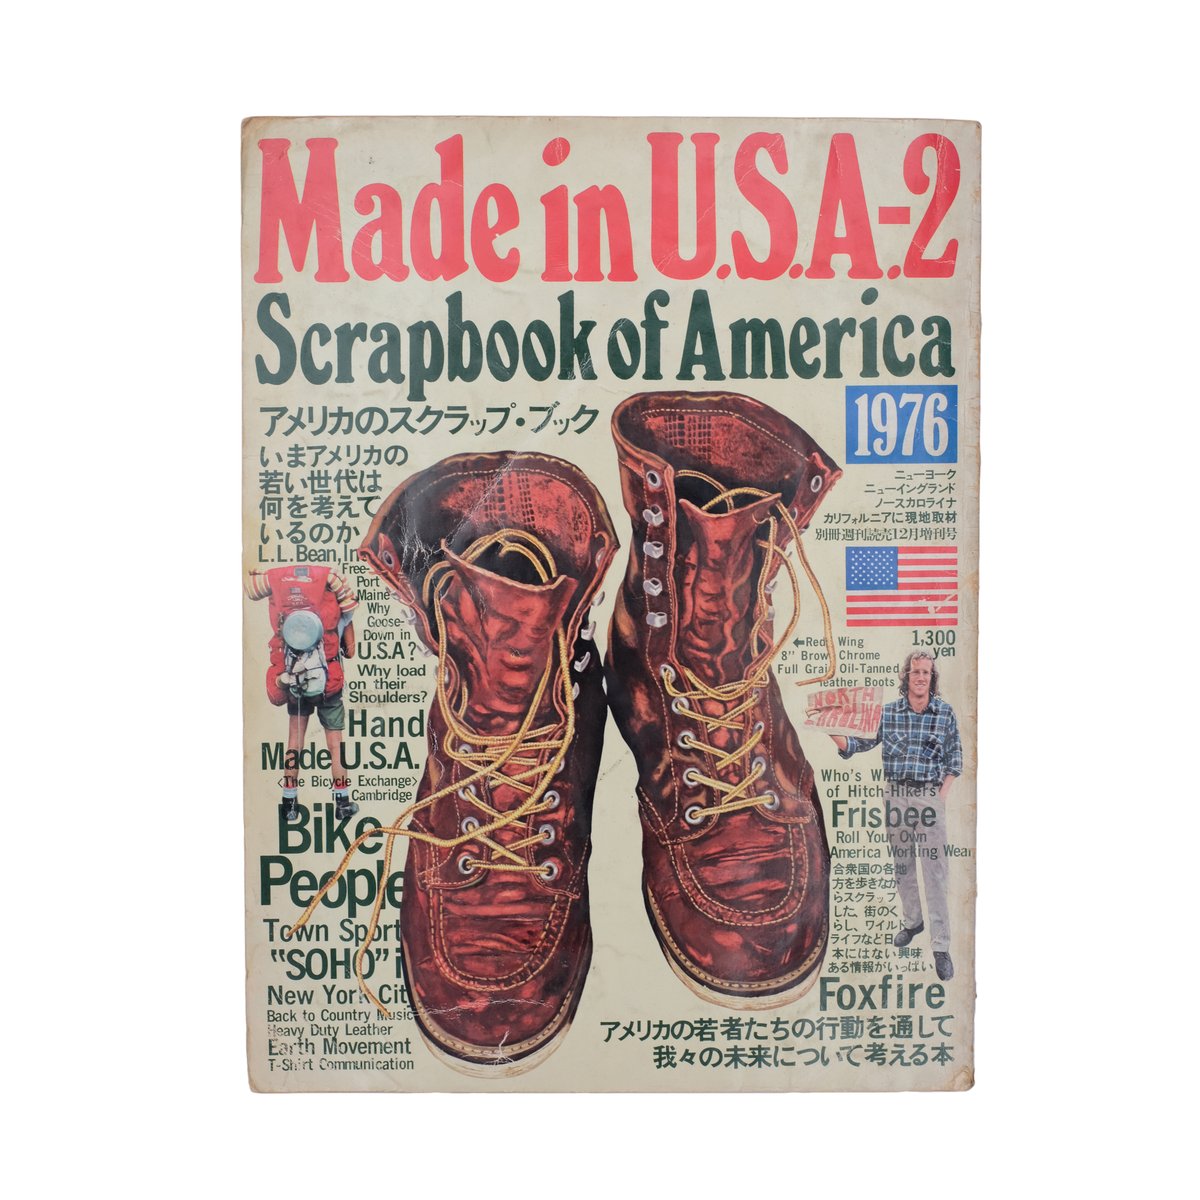 Image of Made in U.S.A-2 Scrapbook of America 1976